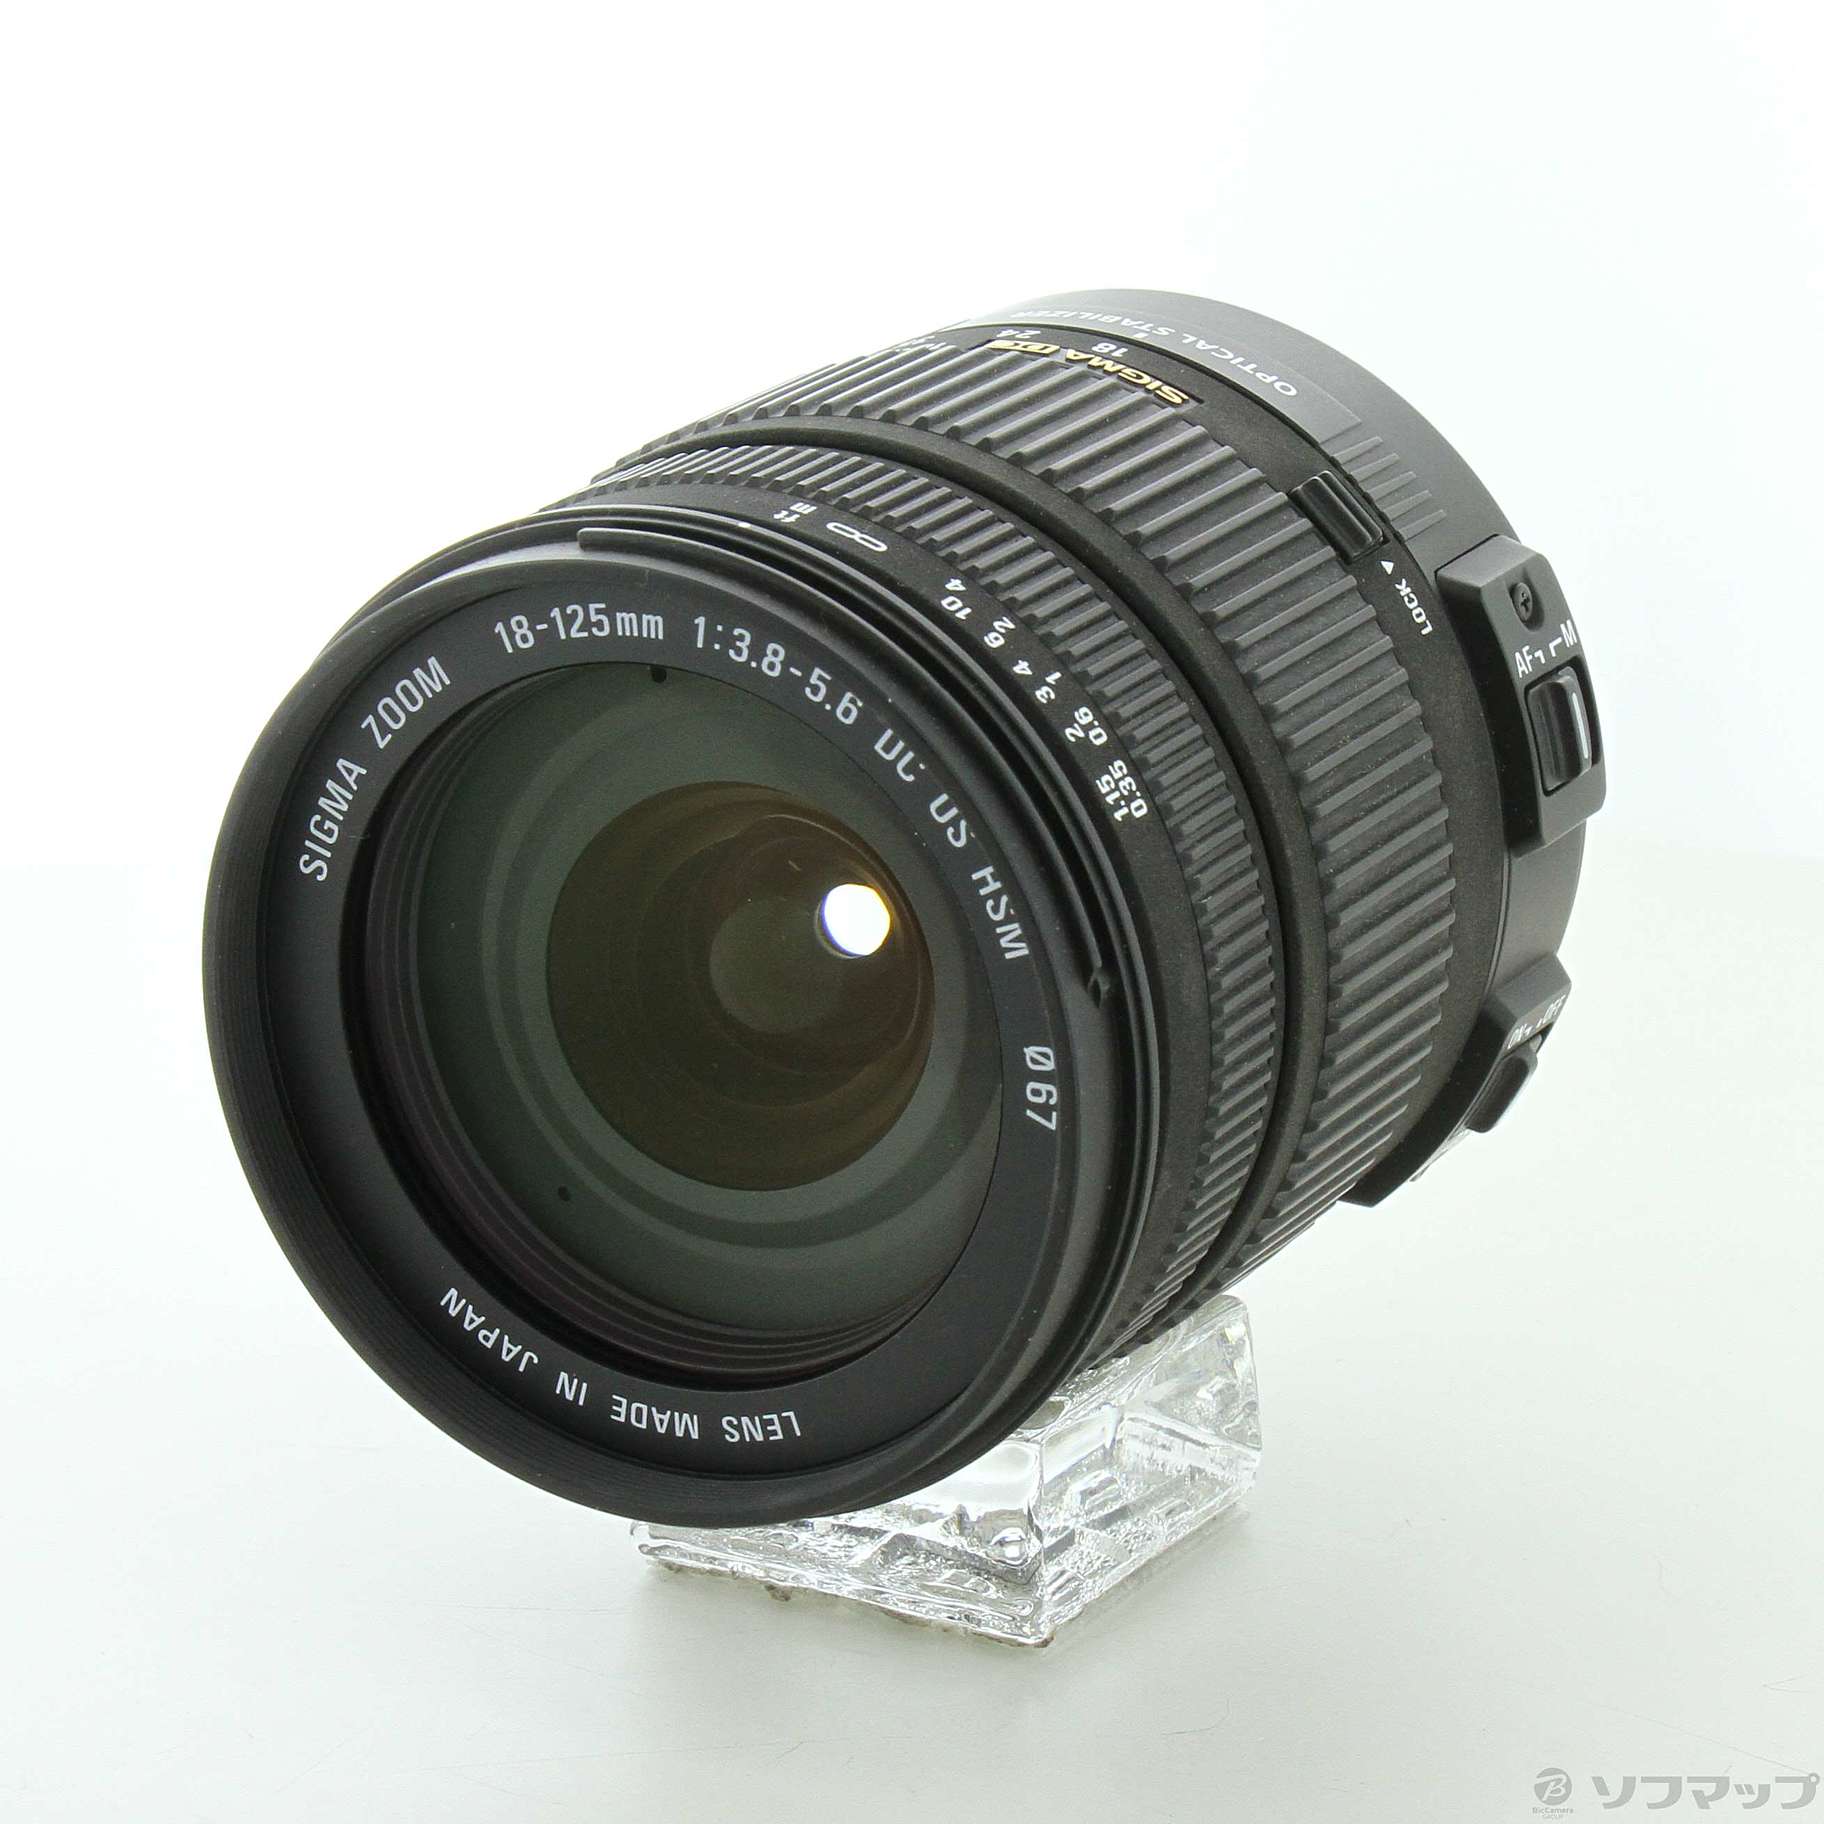 SIGMA18-125mm F3 8-5 6 DC OS HSM Canon用-